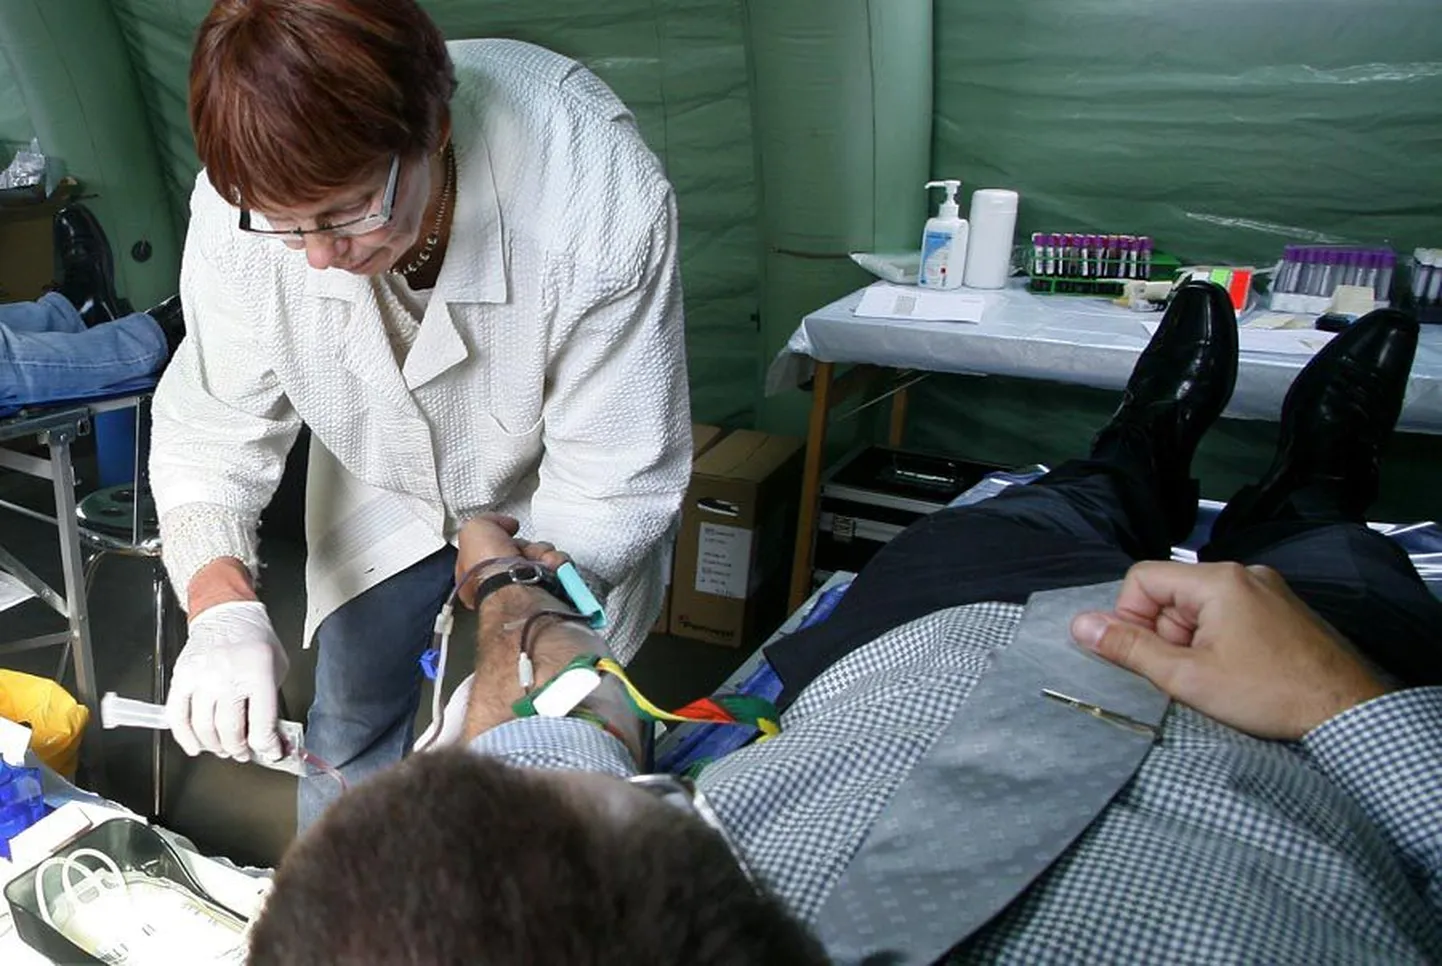 Viljandi doonorid on pidanud hepatiidipuhangu pärast üle aasta ootama, et saaks verd loovutada. Esimene doonoripäev ootab ees 27. novembril. Foto on tehtud septembrikuisest doonoripäevast Pärnus.